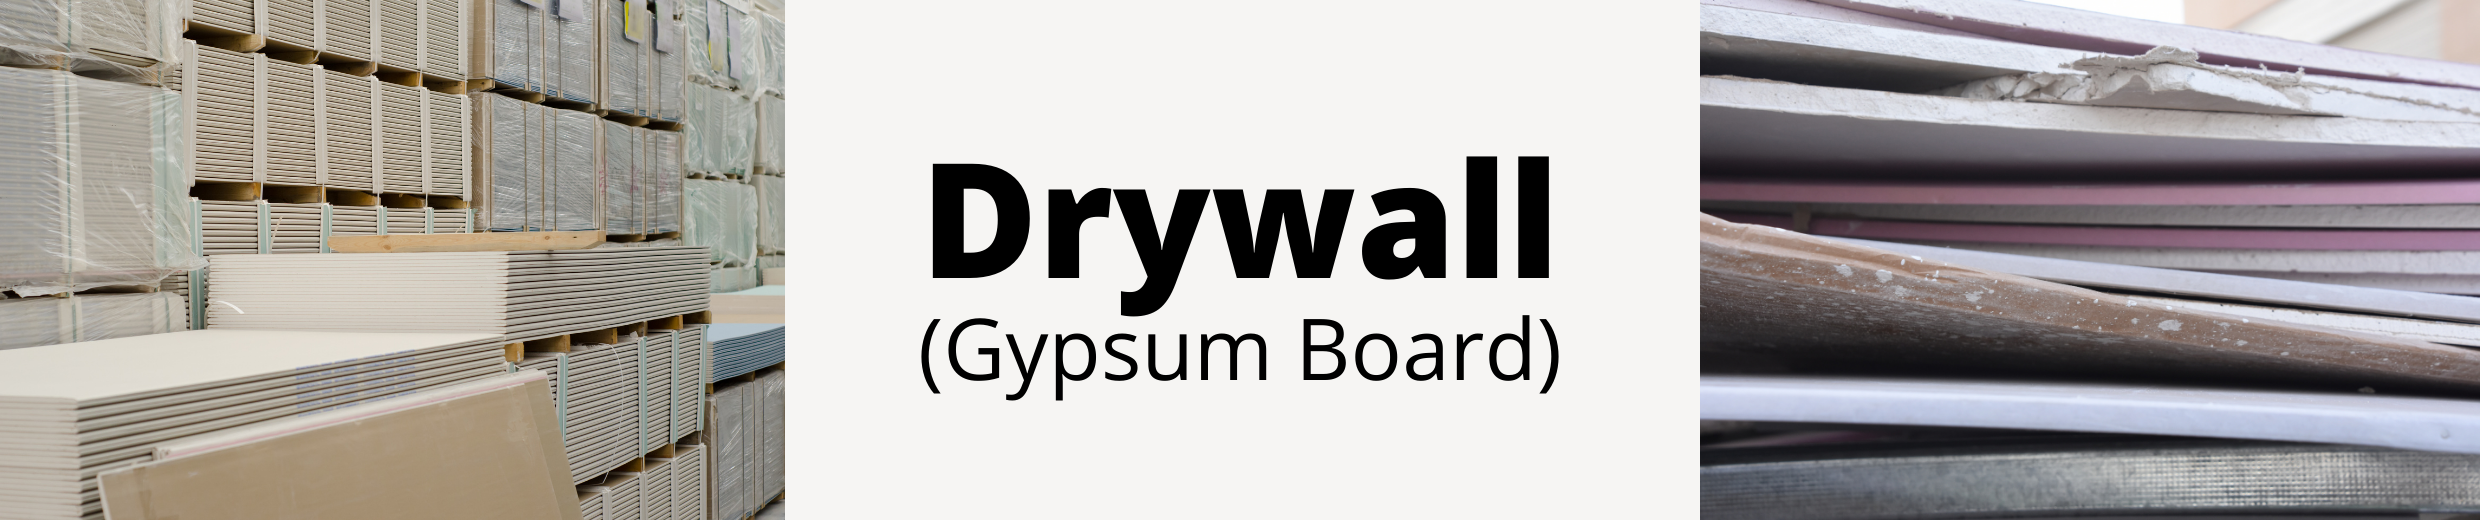 Drywall (Gypsum Board)